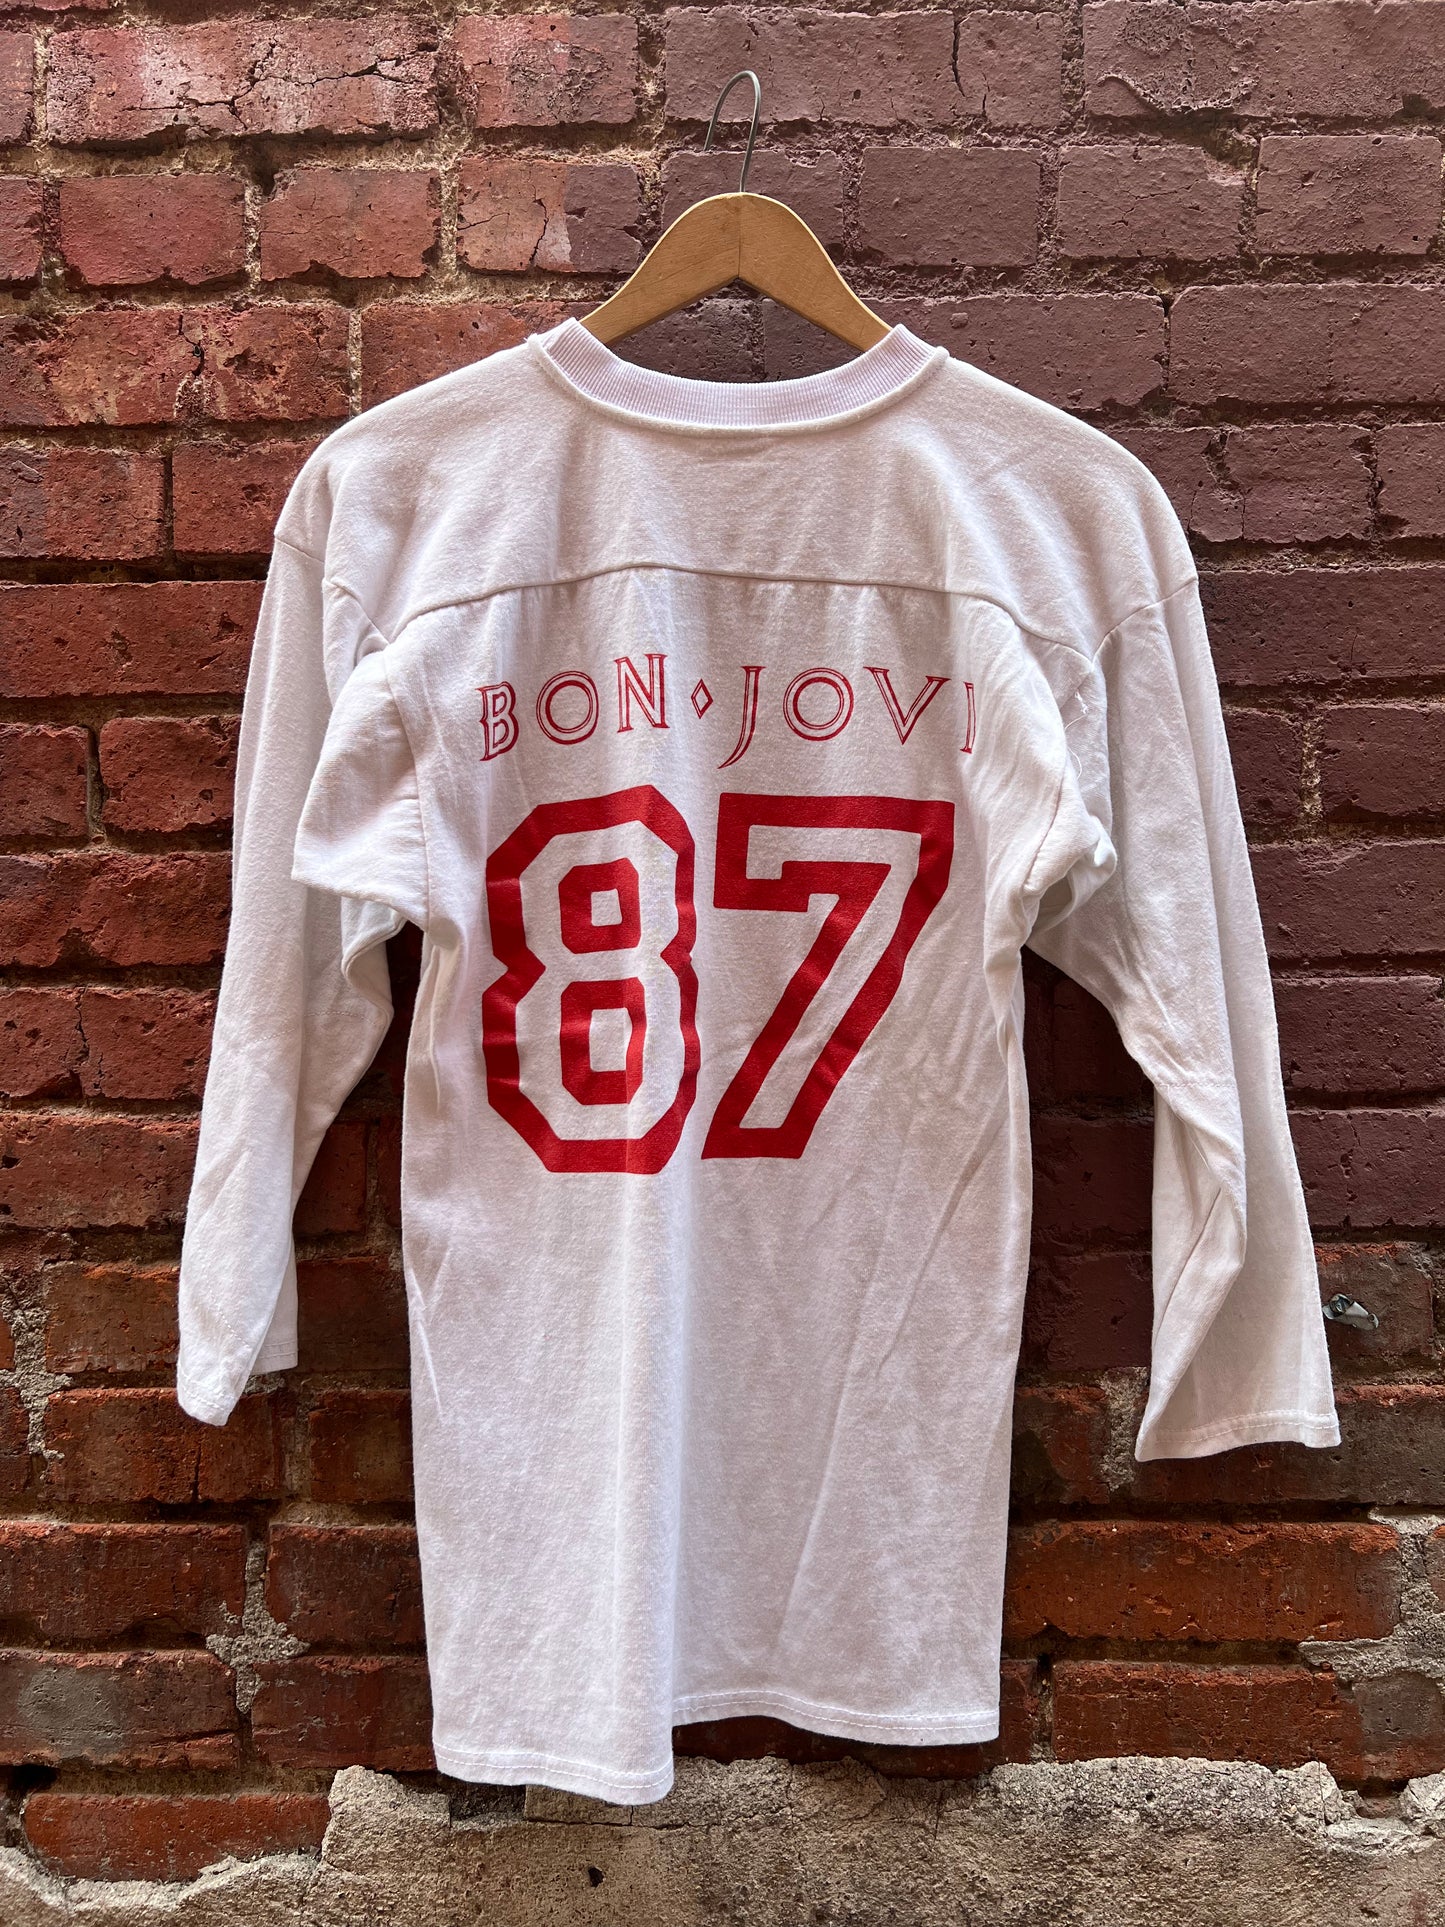 1980s BON JOVI “Crew Member” Vintage Tour Shirt Nassau Coliseum - Size M